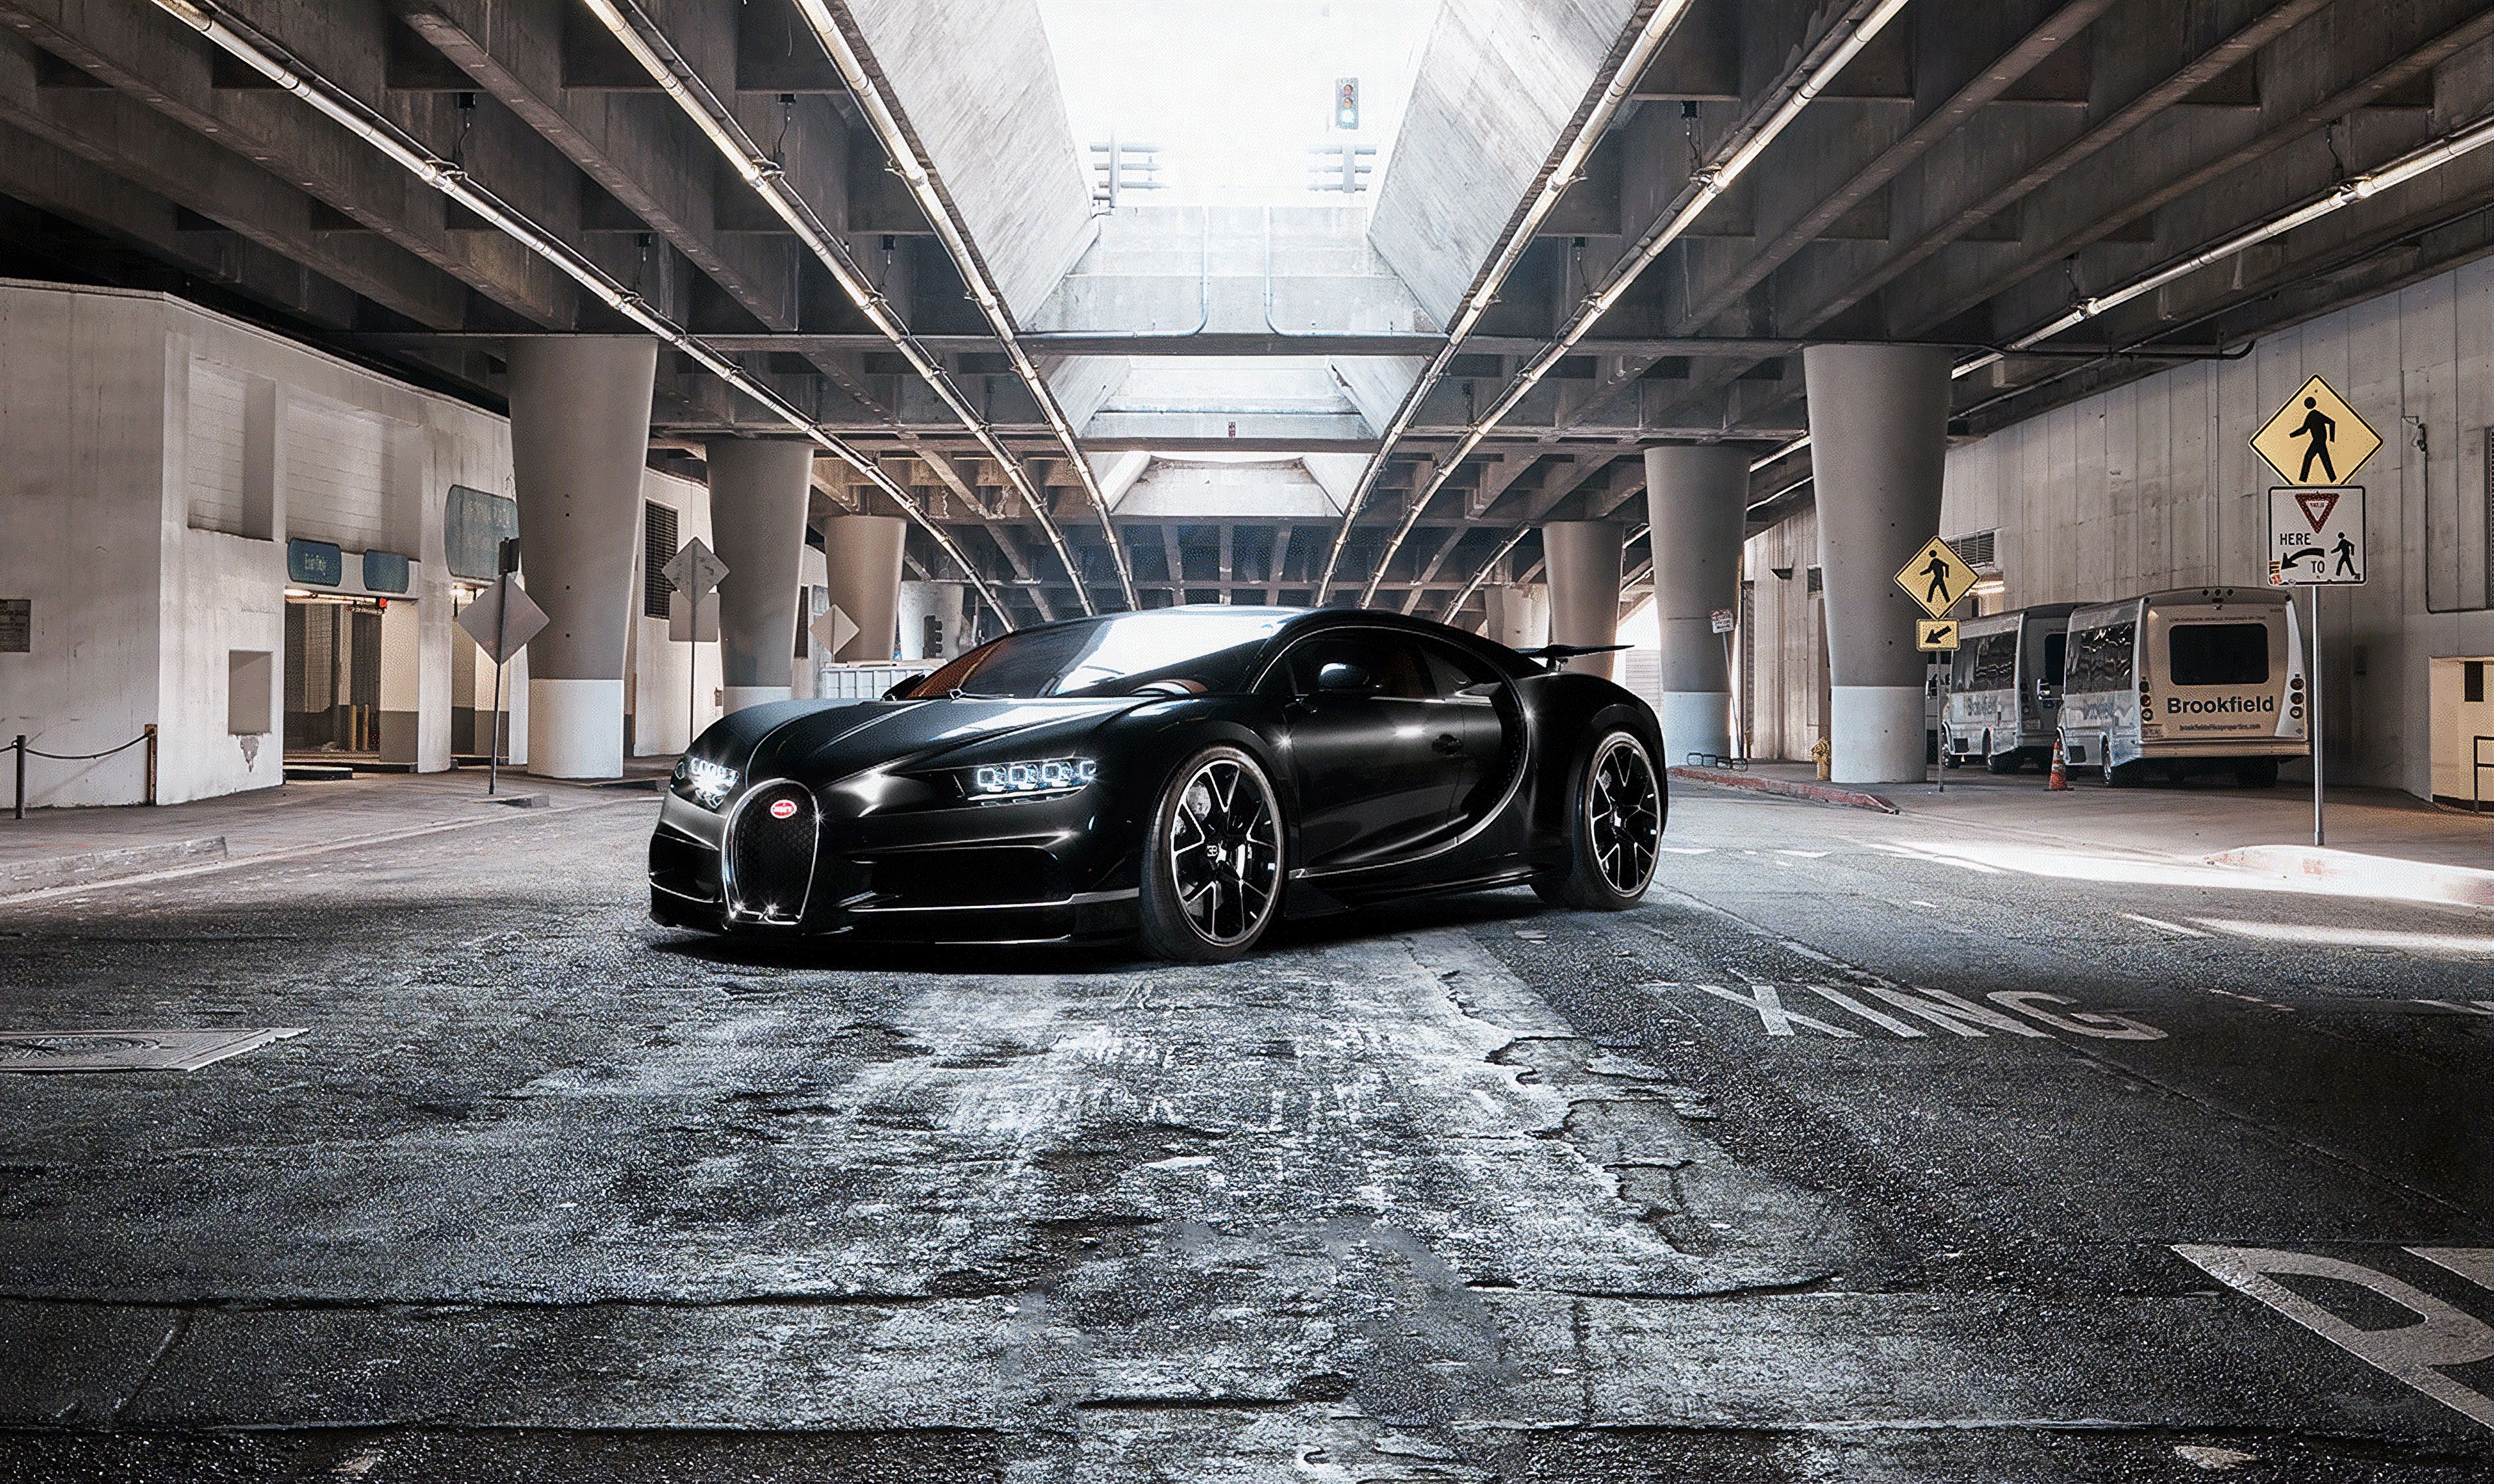 4k Bugatti Chiron, HD Cars, 4k Wallpaper, Image, Background